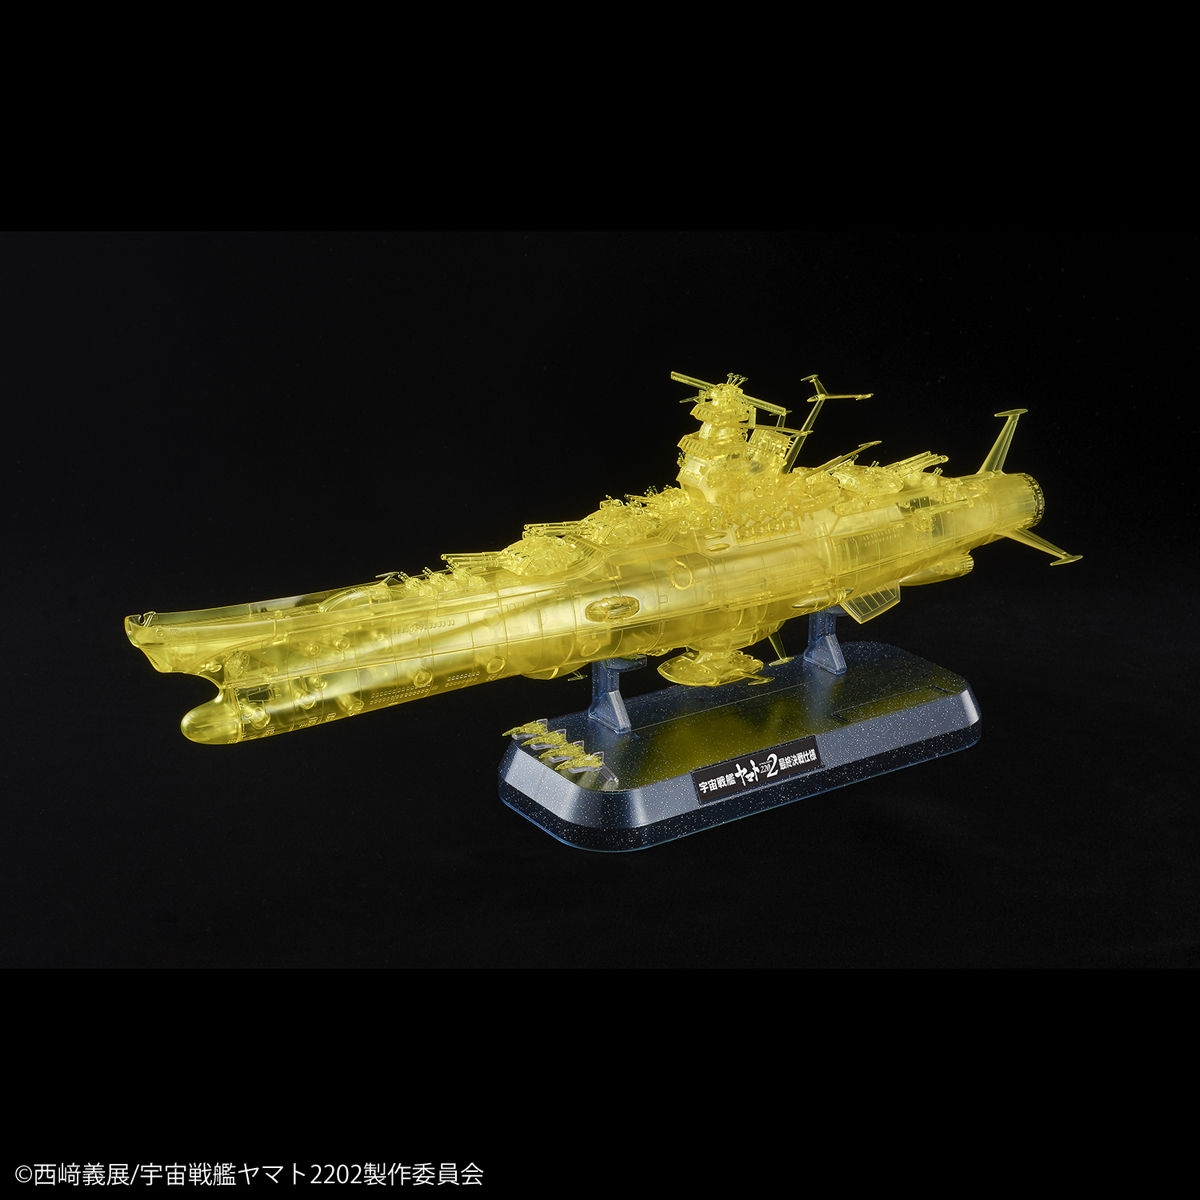 Final Battle Ver. Bandai Space Battleship Yamato 2202 1/1000 